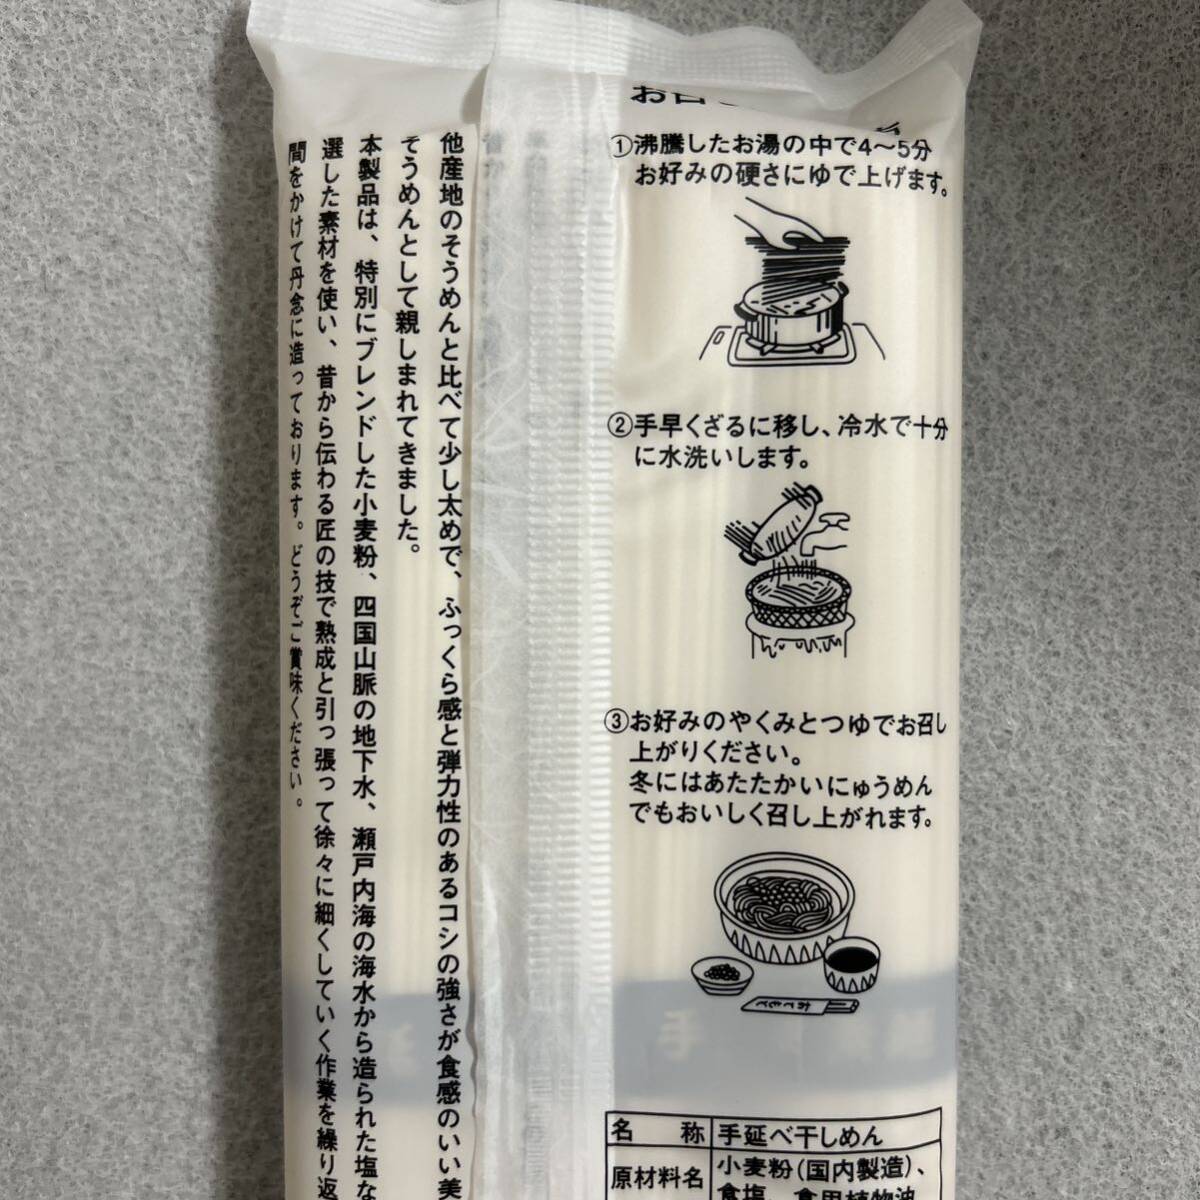  Tokushima название производство половина рисовое поле рука .. вермишель 300g×3 пакет комплект половина рисовое поле элемент лапша 